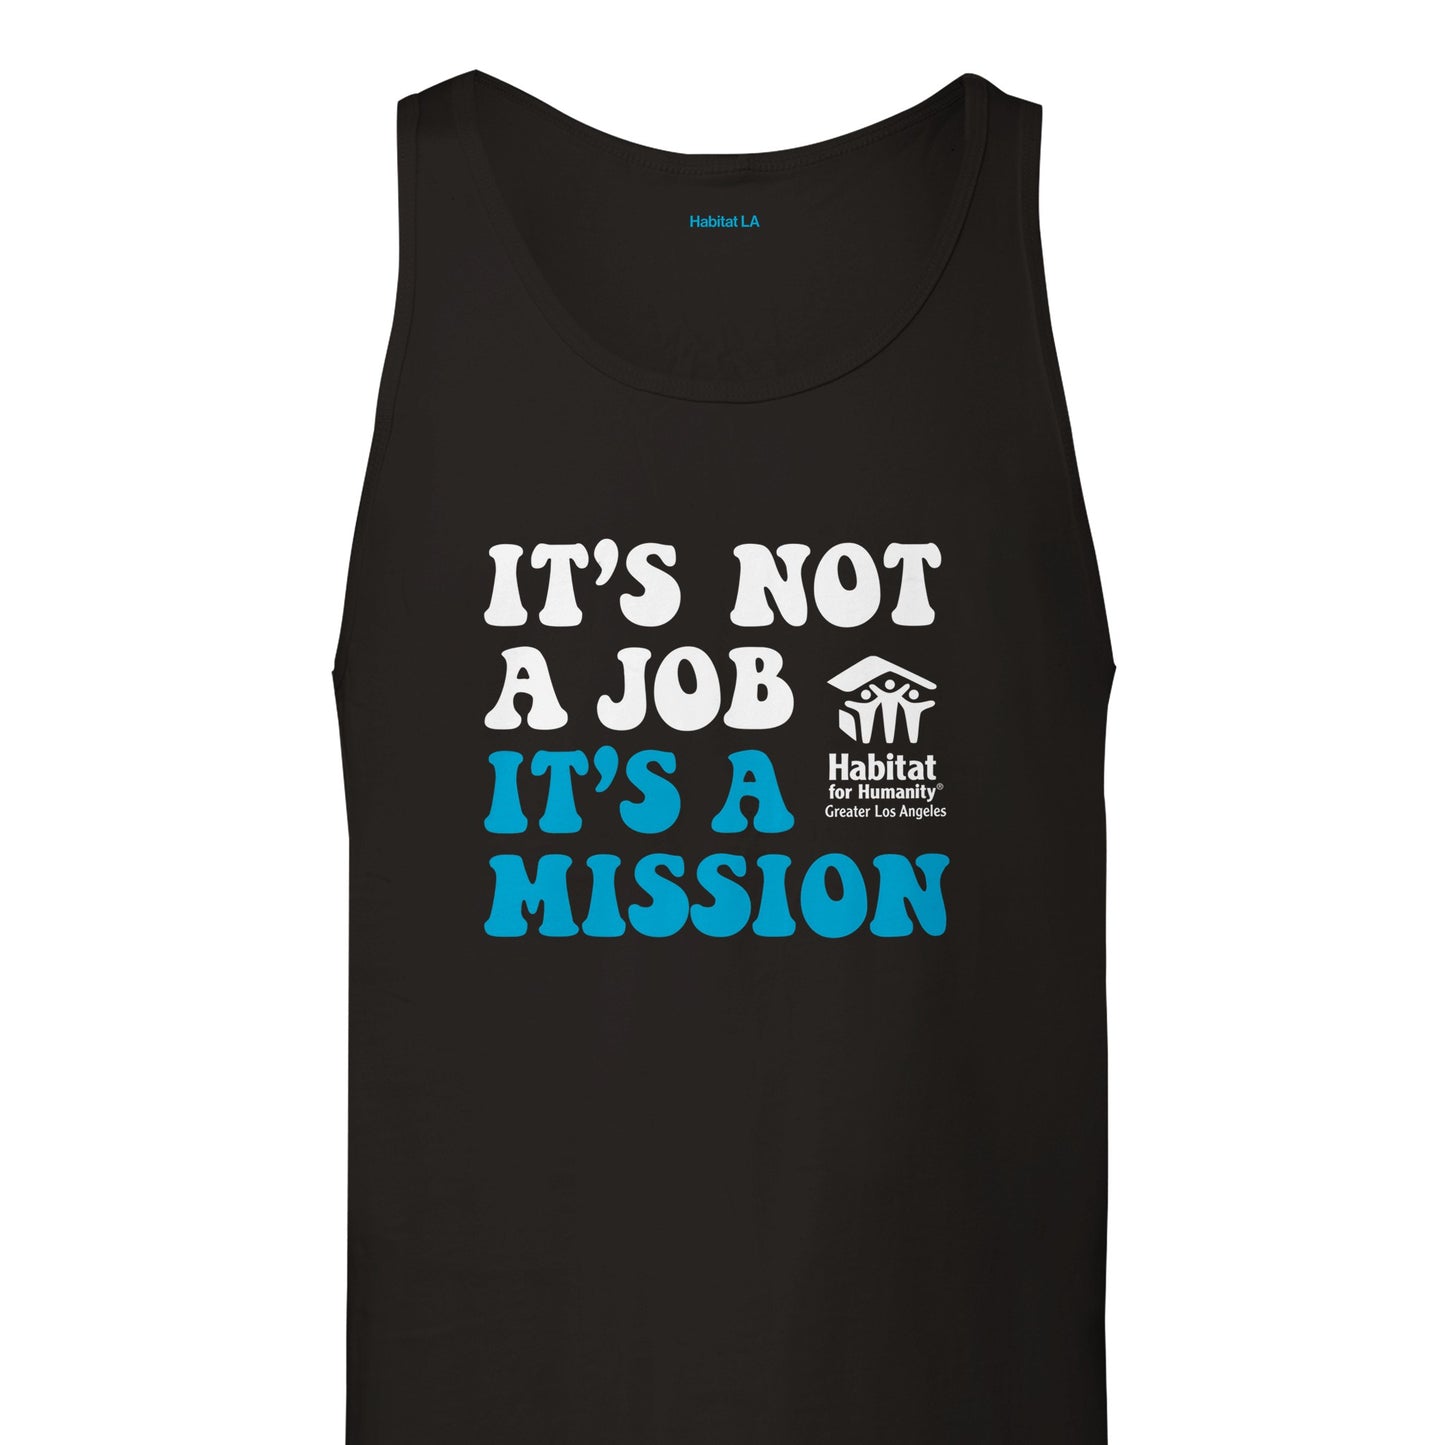 Camiseta sin mangas unisex premium "Es una misión"